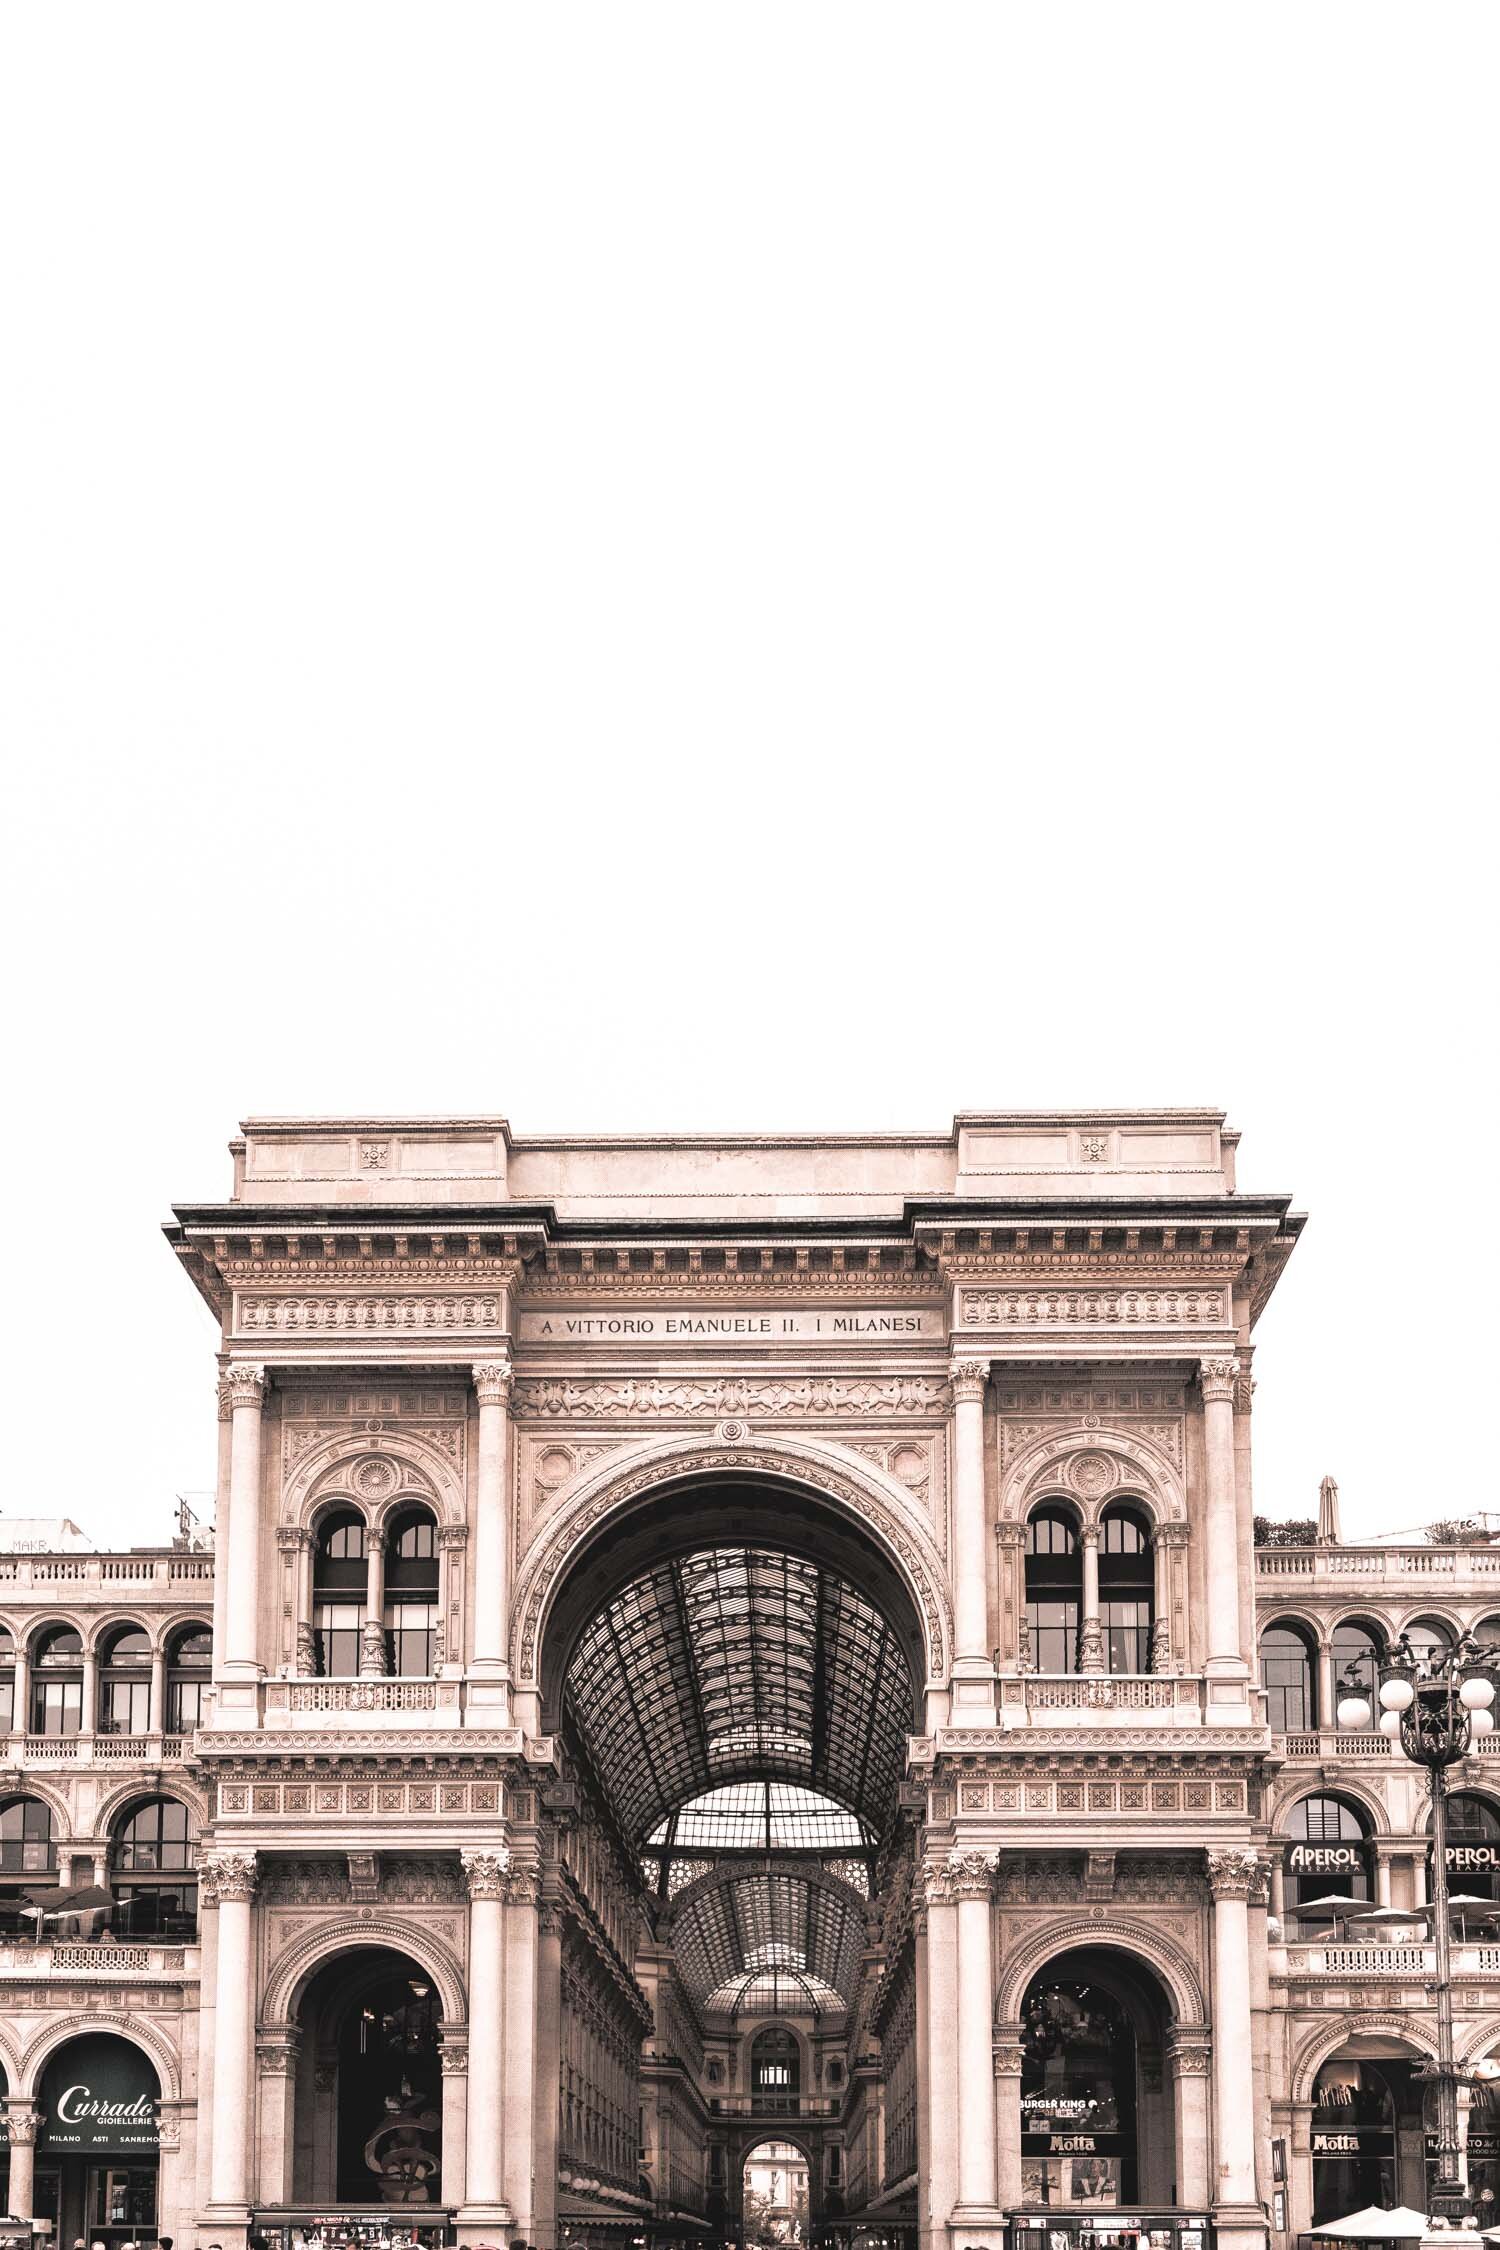 Stefania-Boglioli-Milano-Galleria-Vittorio-Emanuele-from-Piazza-Duomo.jpg